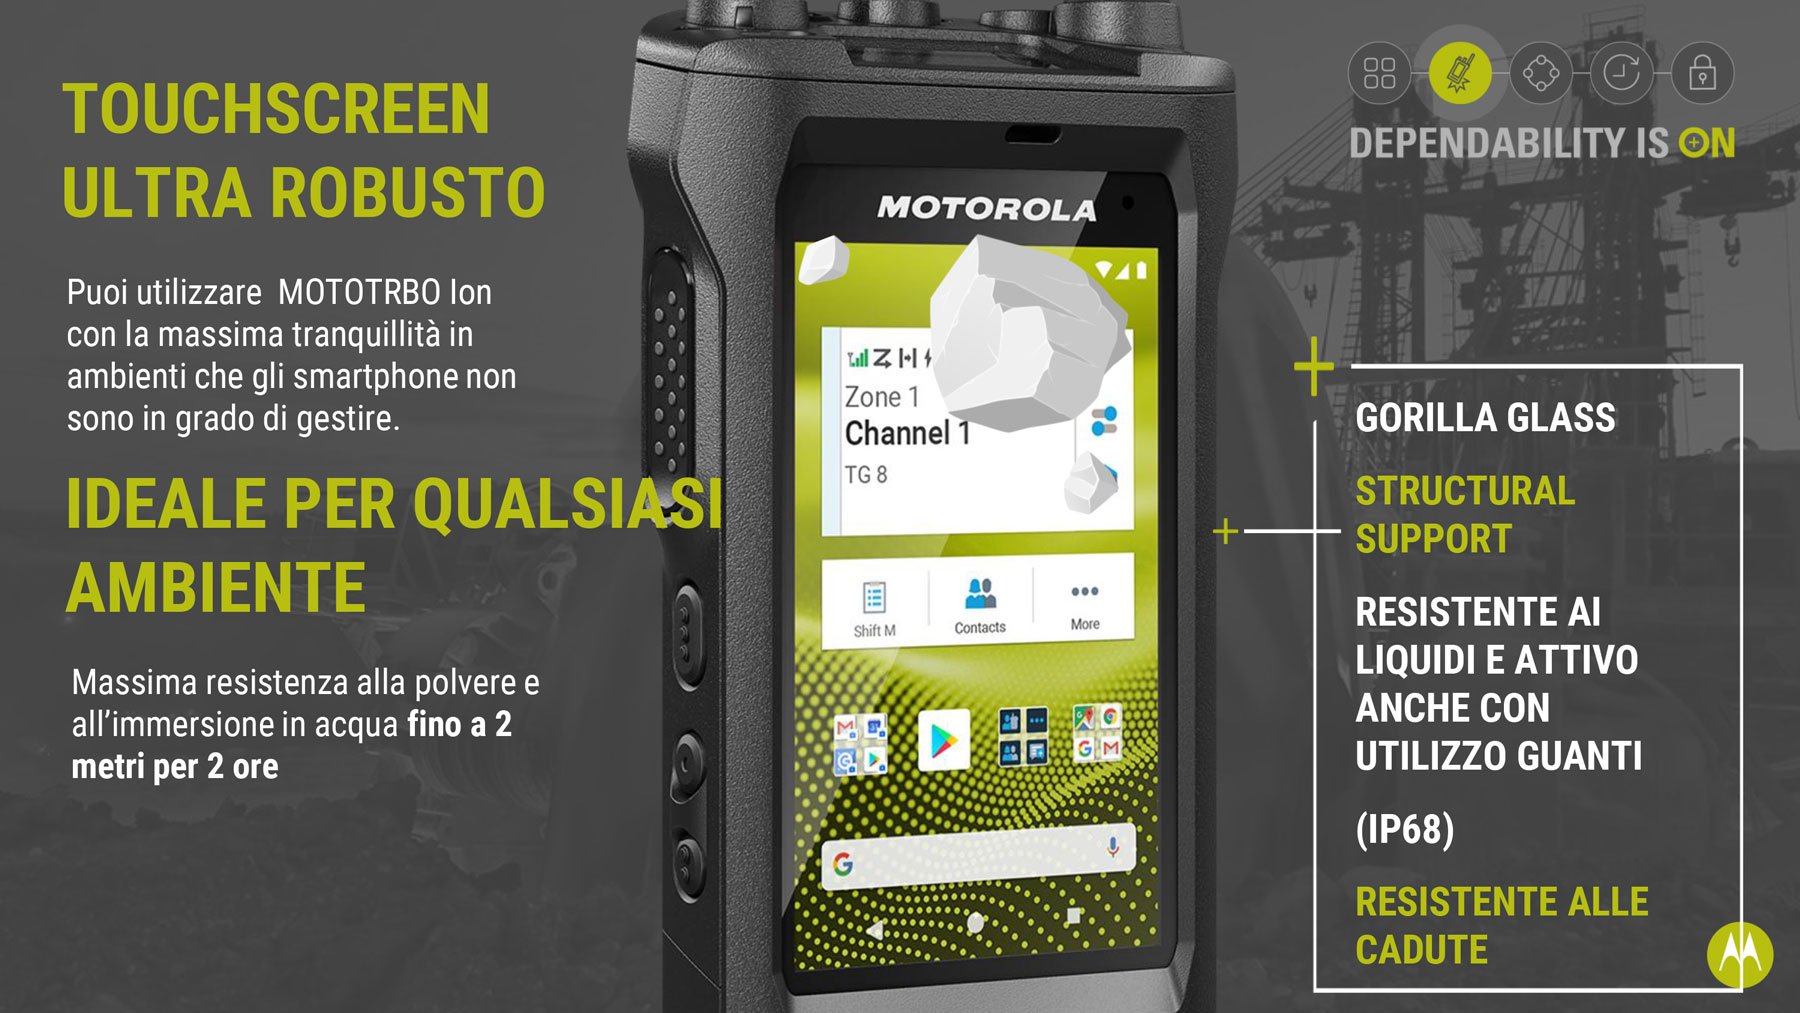 MOTOTRBO radio ion-motorola-solutions è rugged per l'utilizzo in ambienti difficili